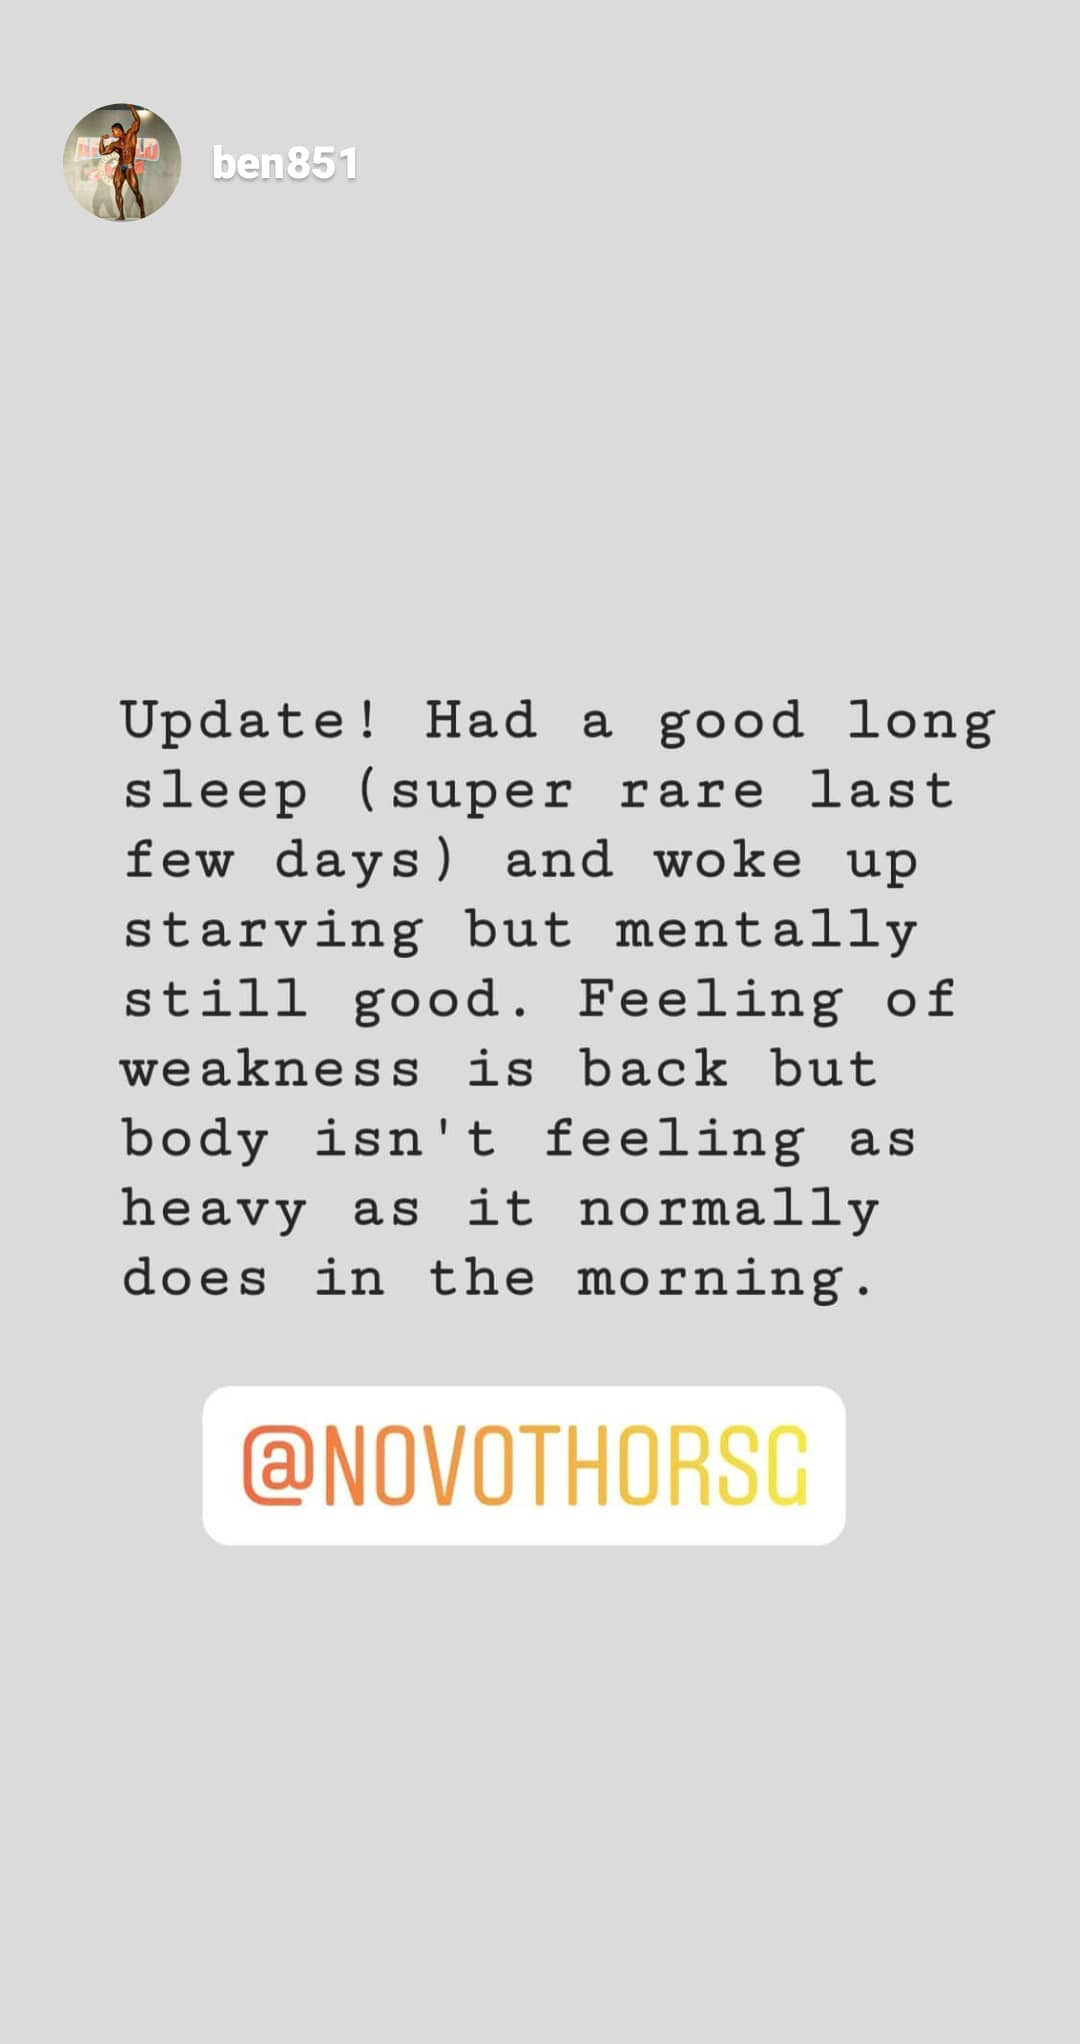 Novothor SG Red Light Therapy Instagram Reviews